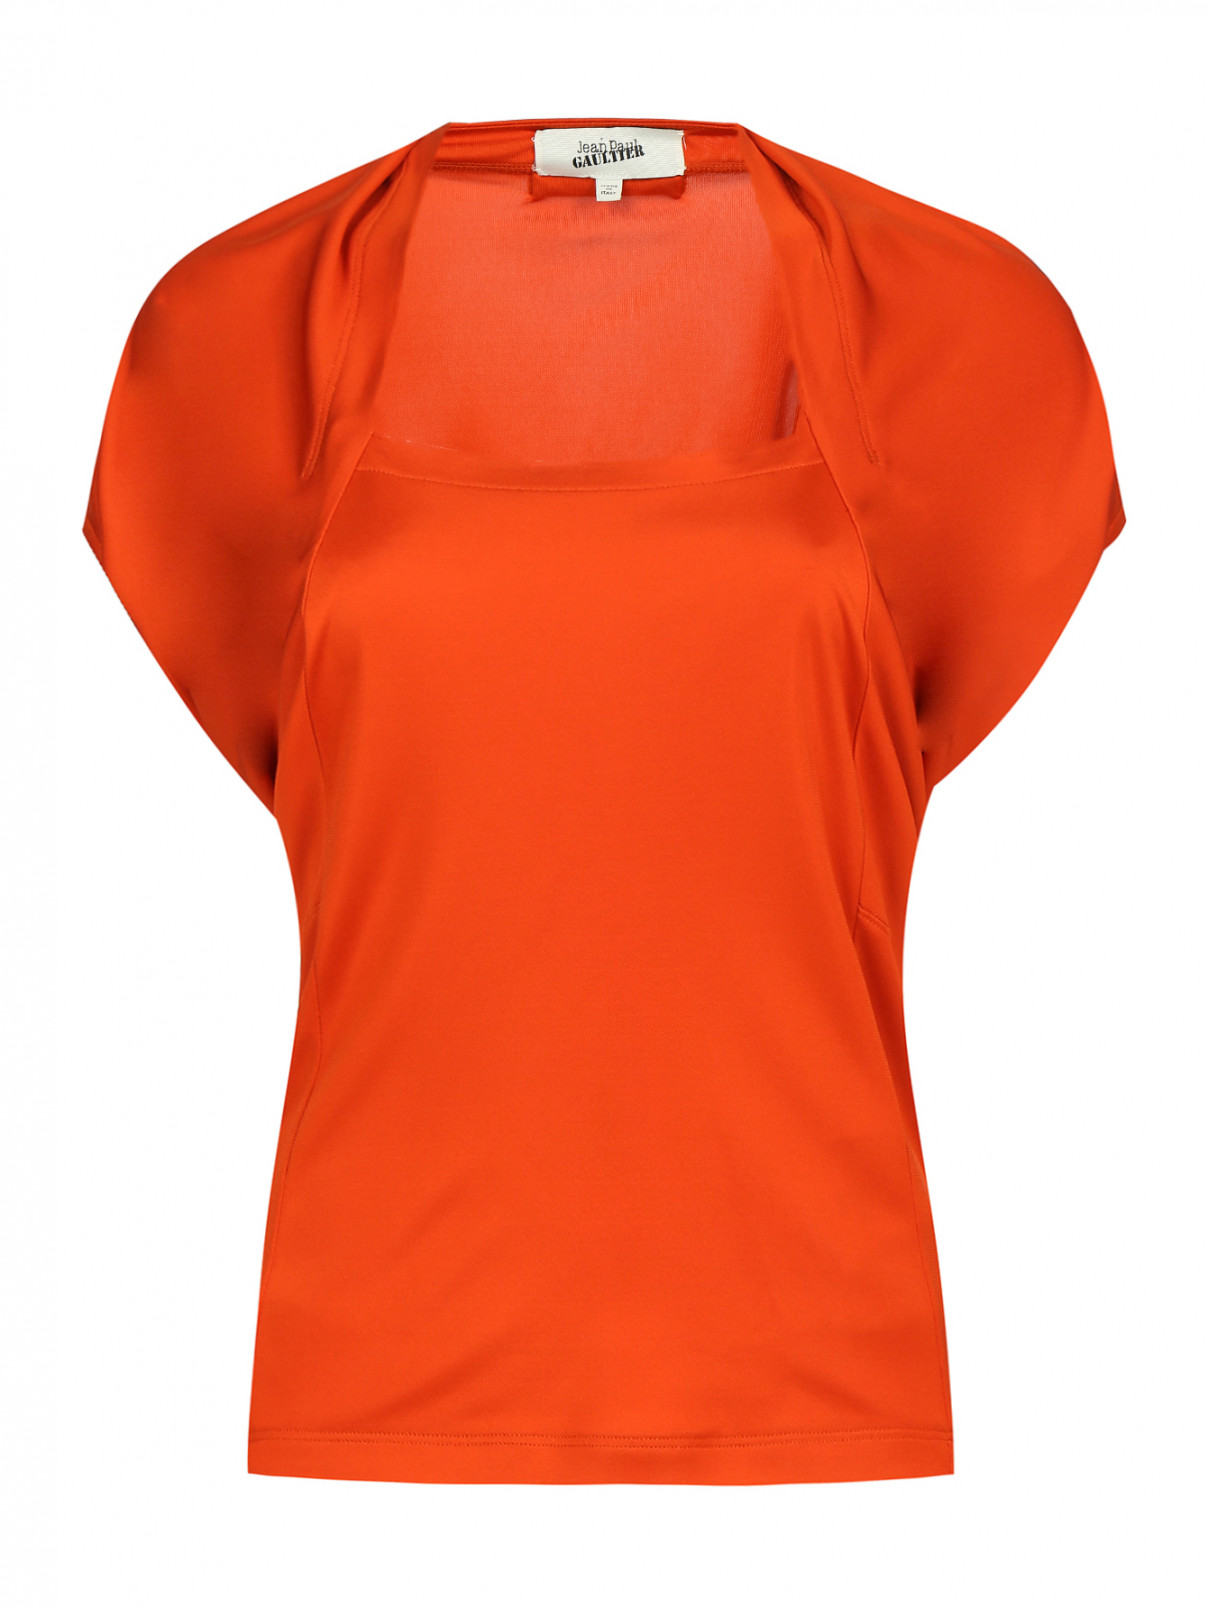 Топ с короткими рукавами и драпировкой Jean Paul Gaultier  –  Общий вид  – Цвет:  Оранжевый